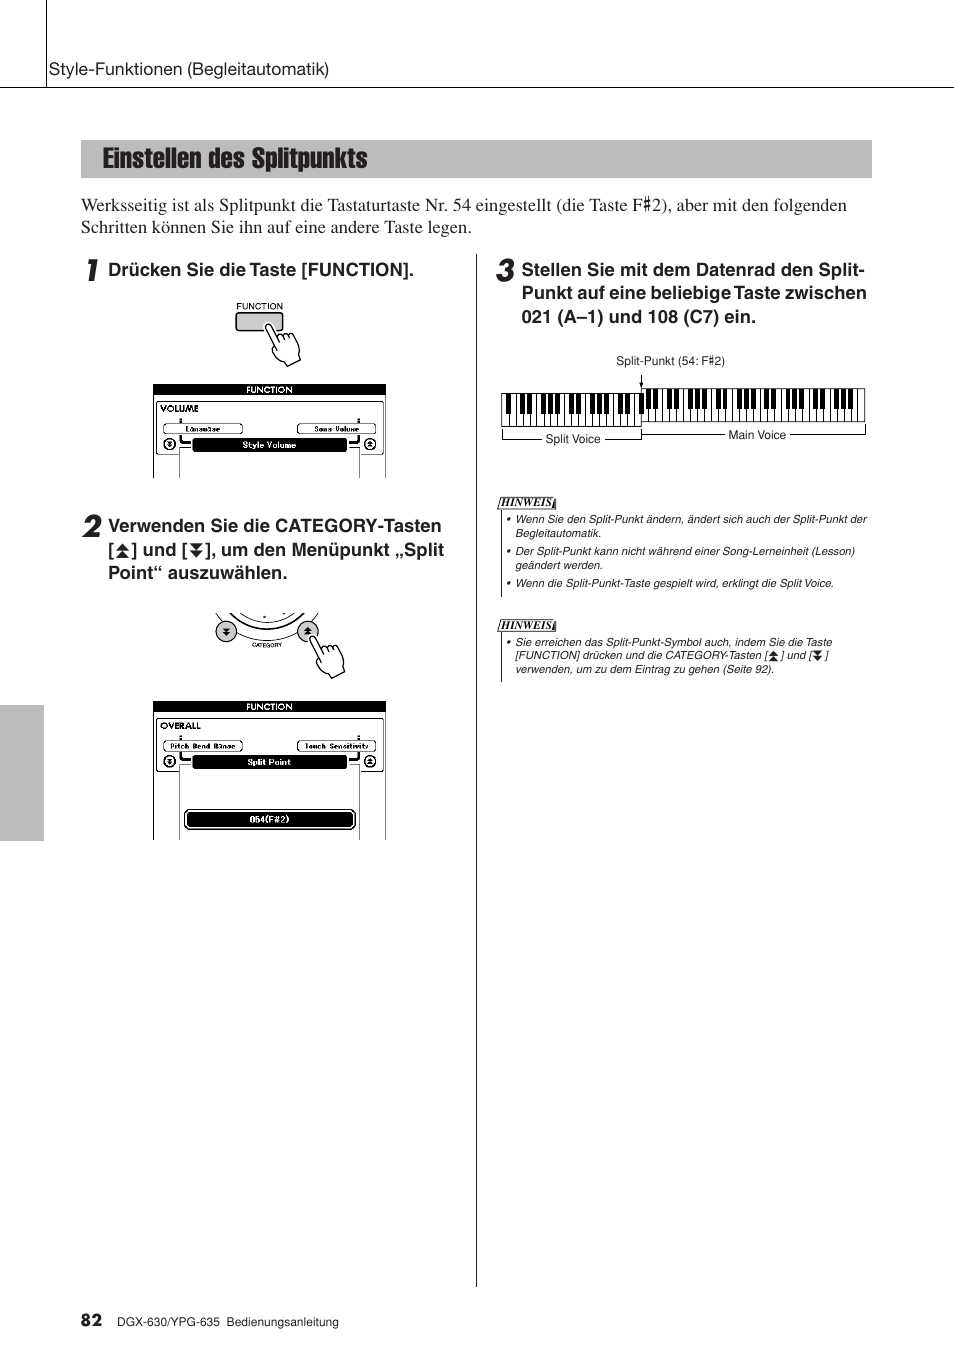 Einstellen des splitpunkts | Yamaha DGX-630 Benutzerhandbuch | Seite 82 / 160